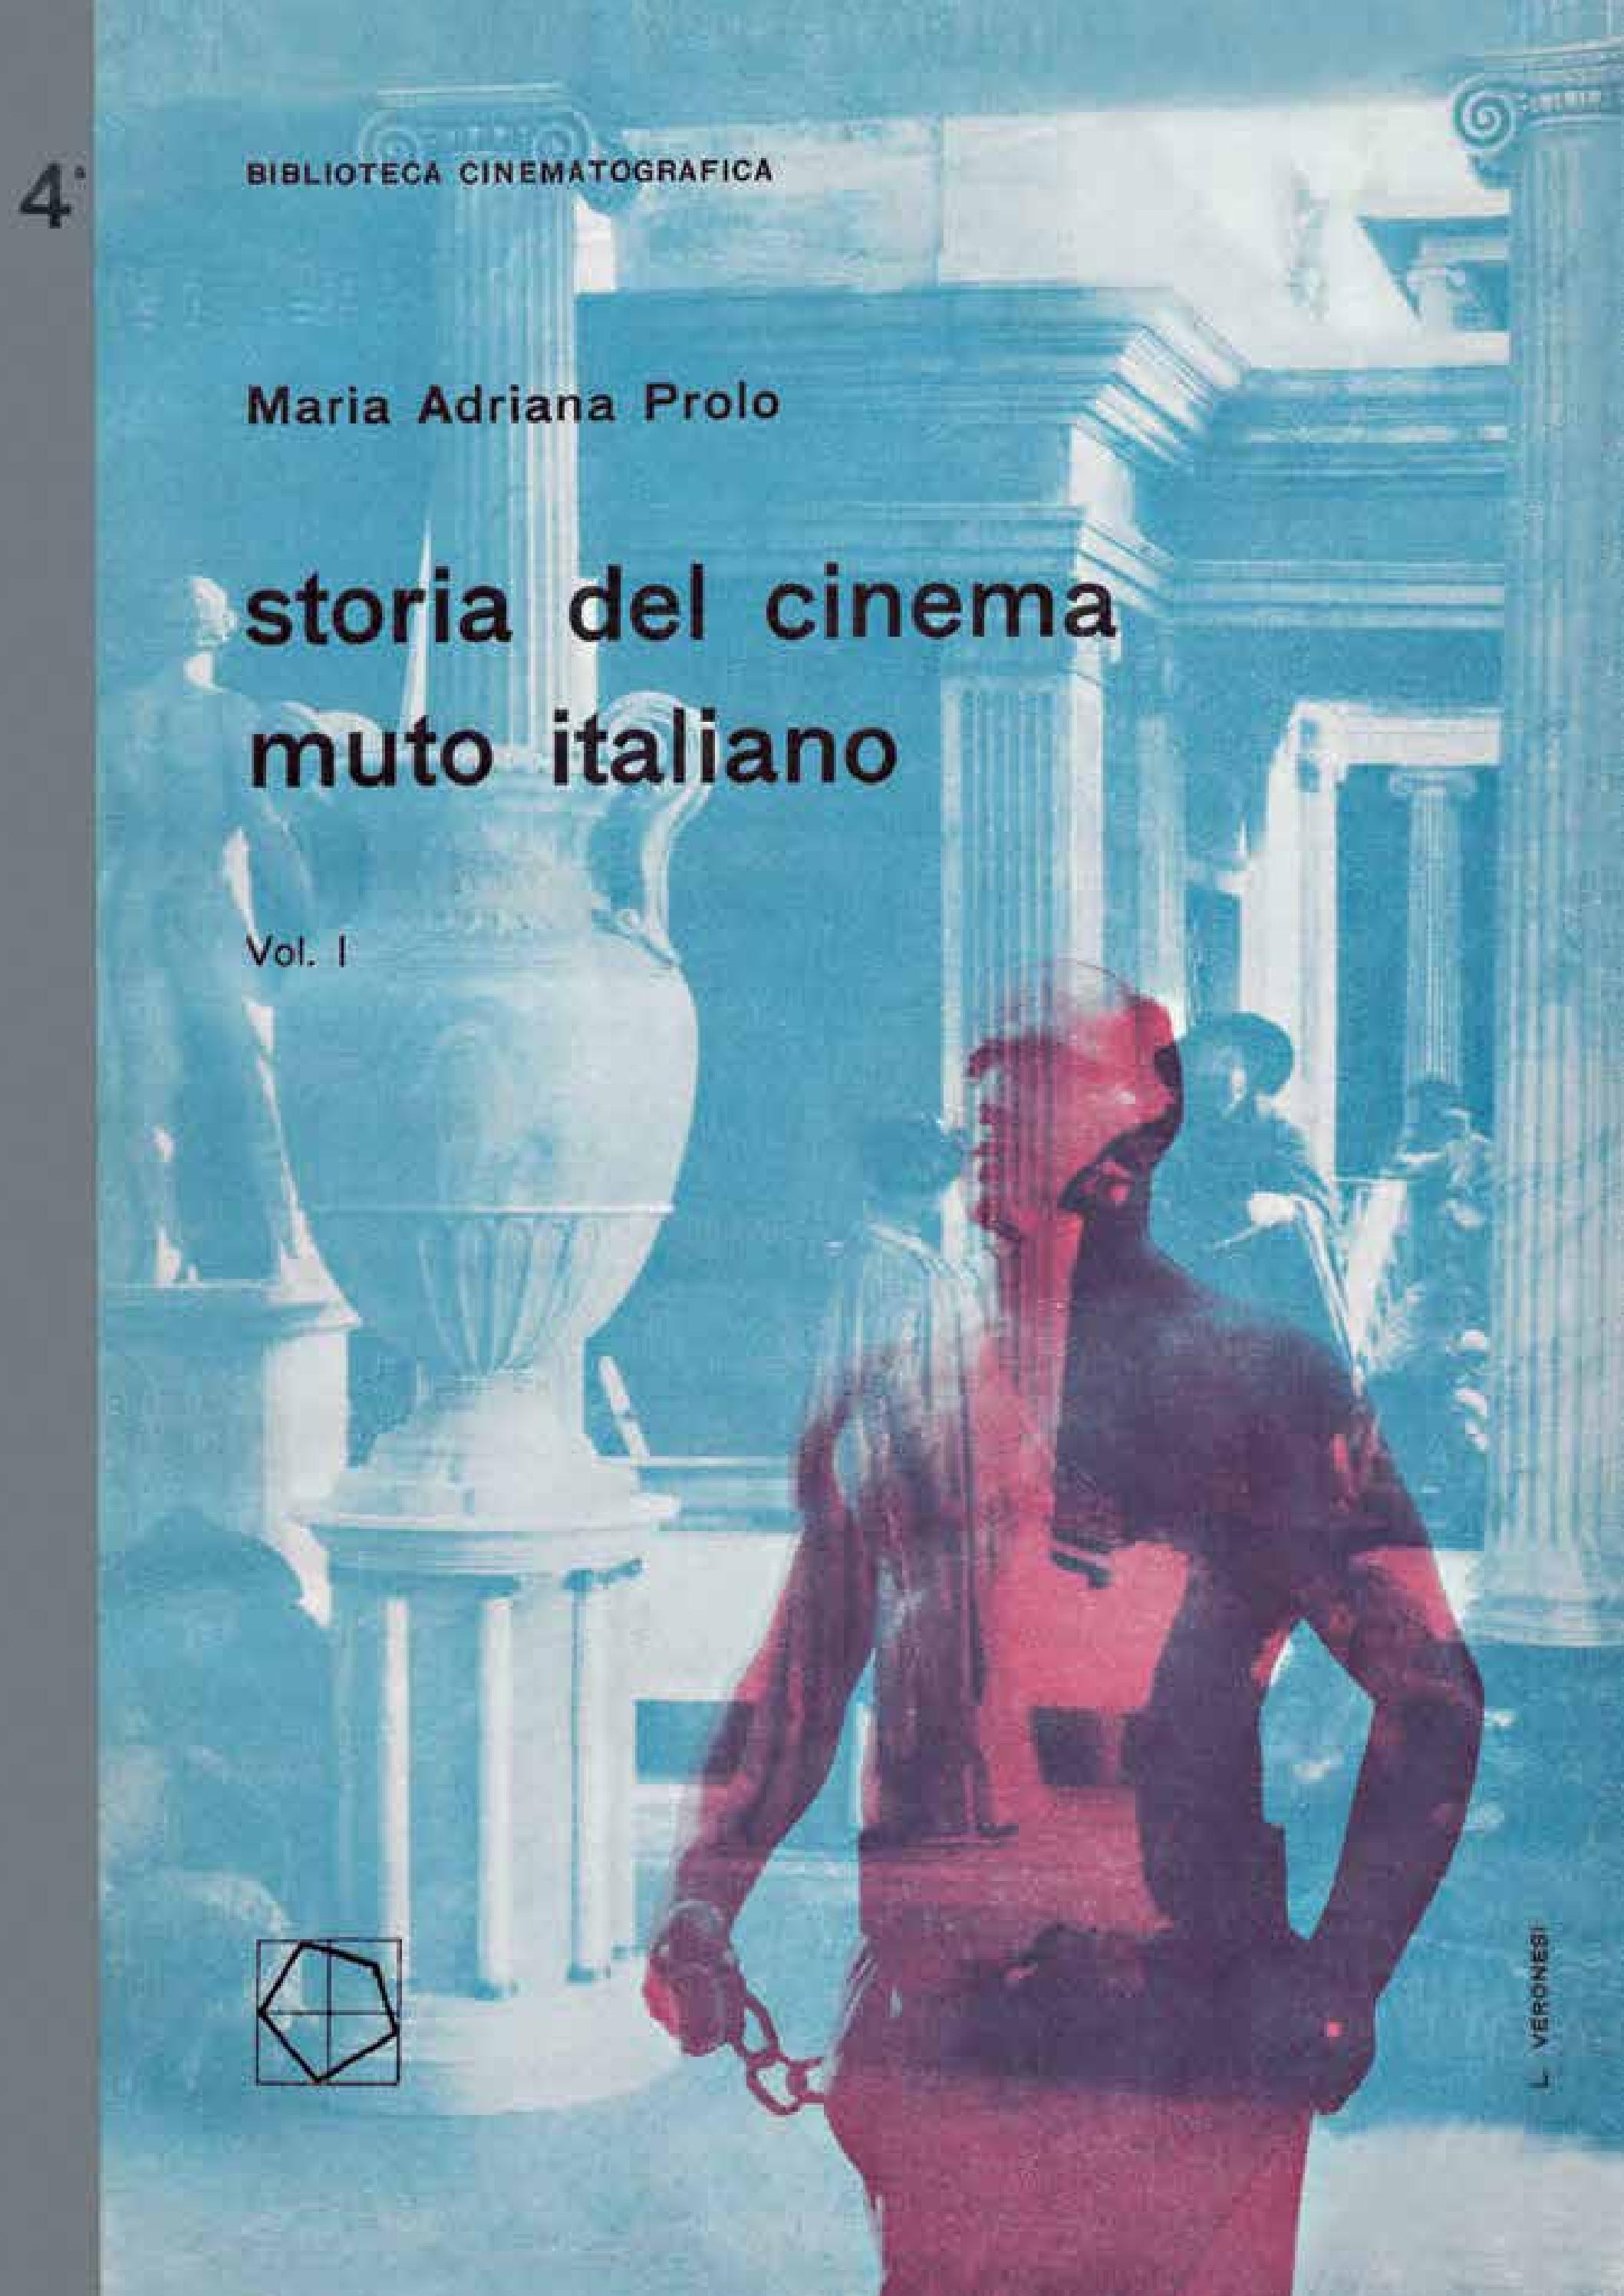 La storia del cinema muto italiano Vol I English version by ...